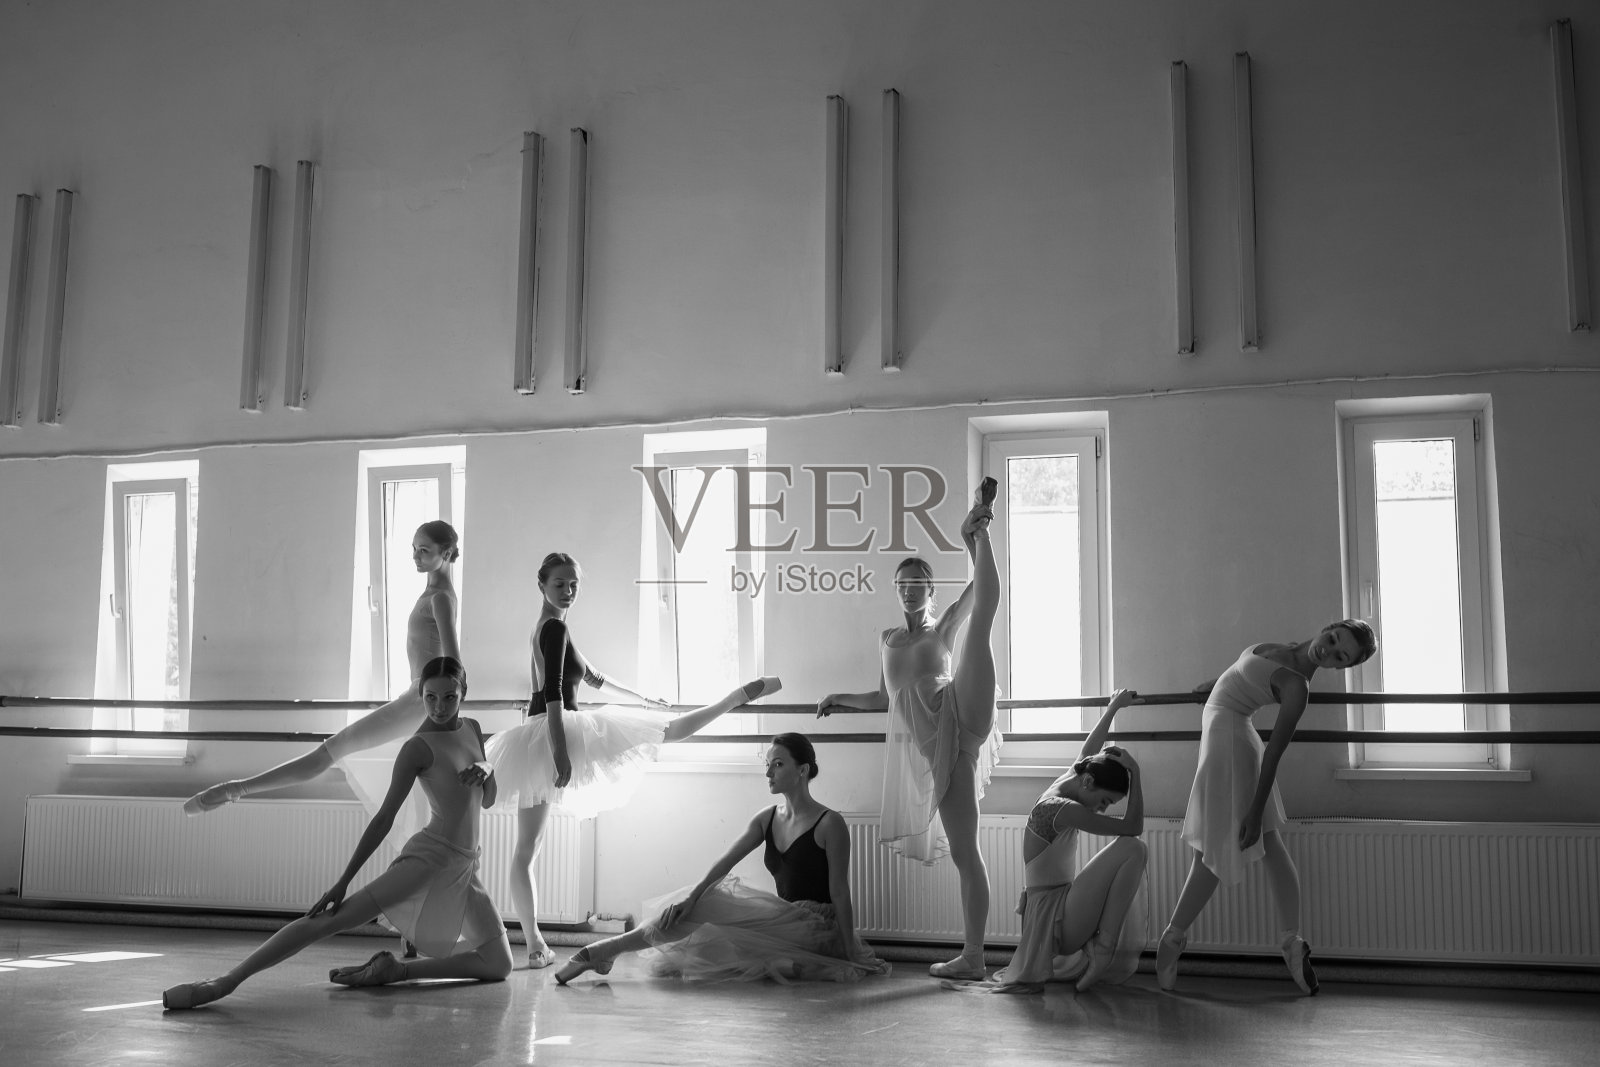 芭蕾舞酒吧里的七个芭蕾舞者照片摄影图片